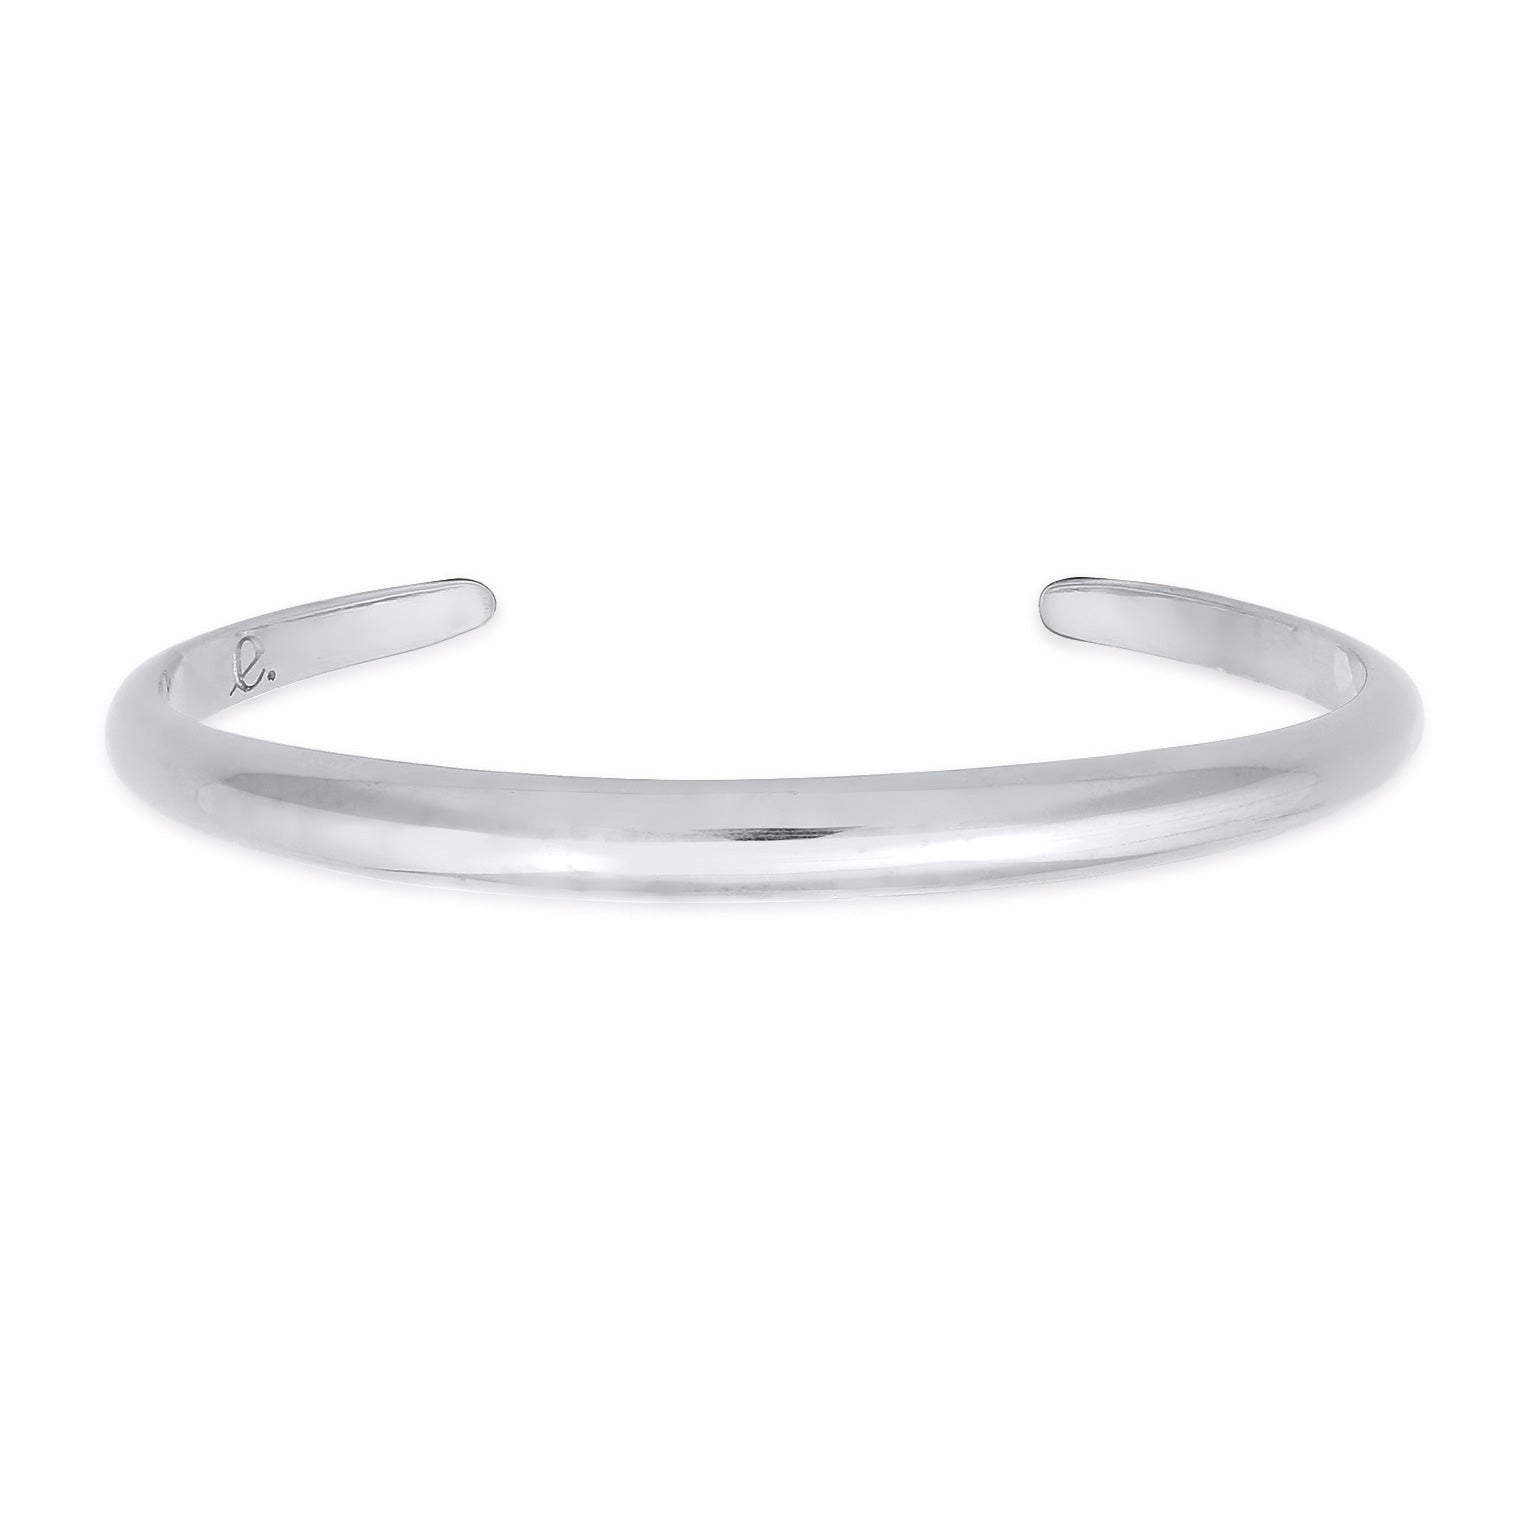 Buy bracelets in Elli's online shop – Elli Jewelry